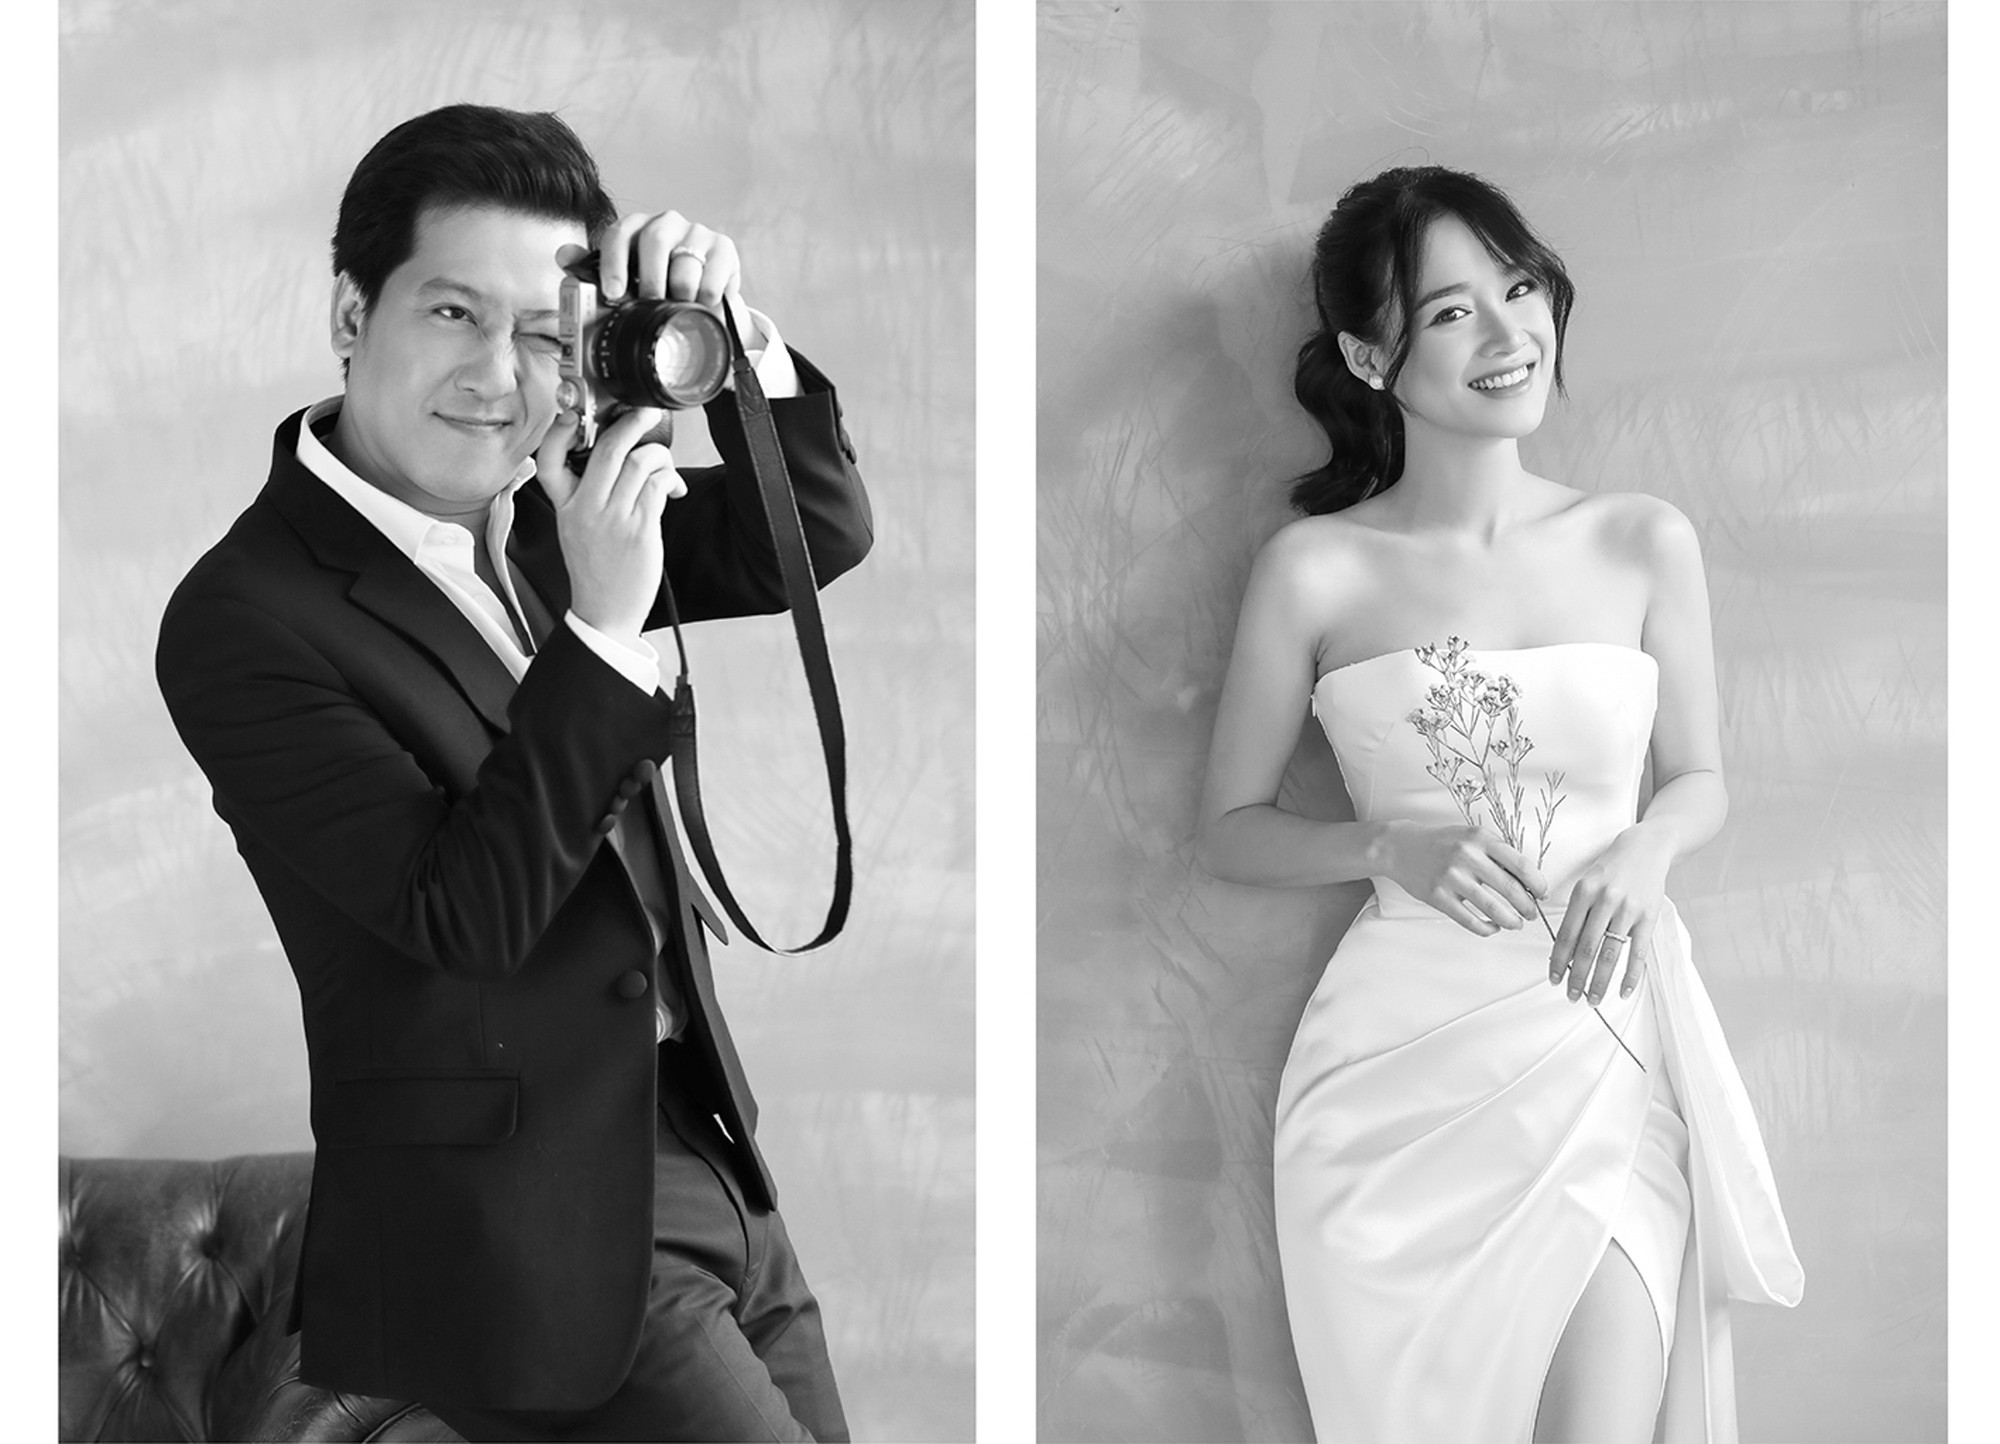 Báo Người lao động đã công bố bộ ảnh cưới của cặp đôi Nghệ sĩ Nhã Phương và Trường Giang, và bạn không thể bỏ qua những hình ảnh tuyệt đẹp này. Từng khung hình đều chứa đựng nhiều cảm xúc, tình cảm và sự kết hợp hoàn hảo của đôi uyên ương này.